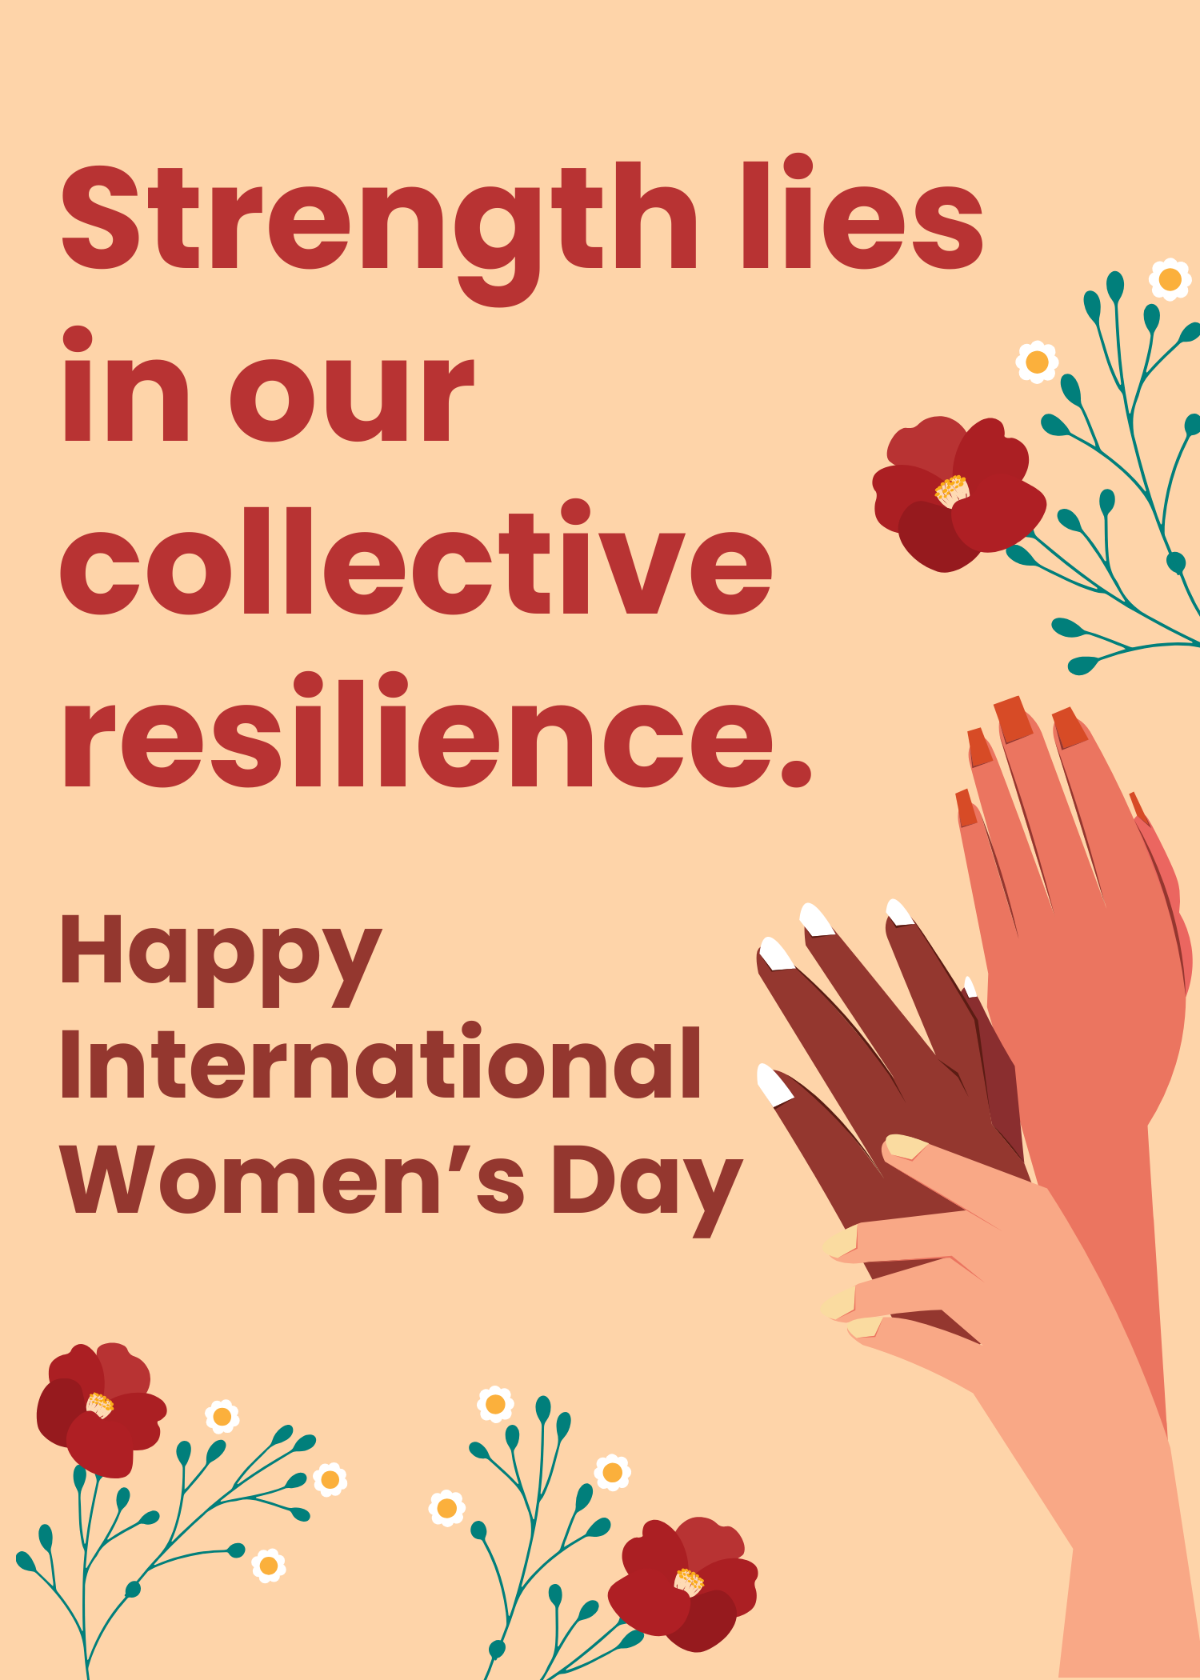 International Women's Day Card Messages